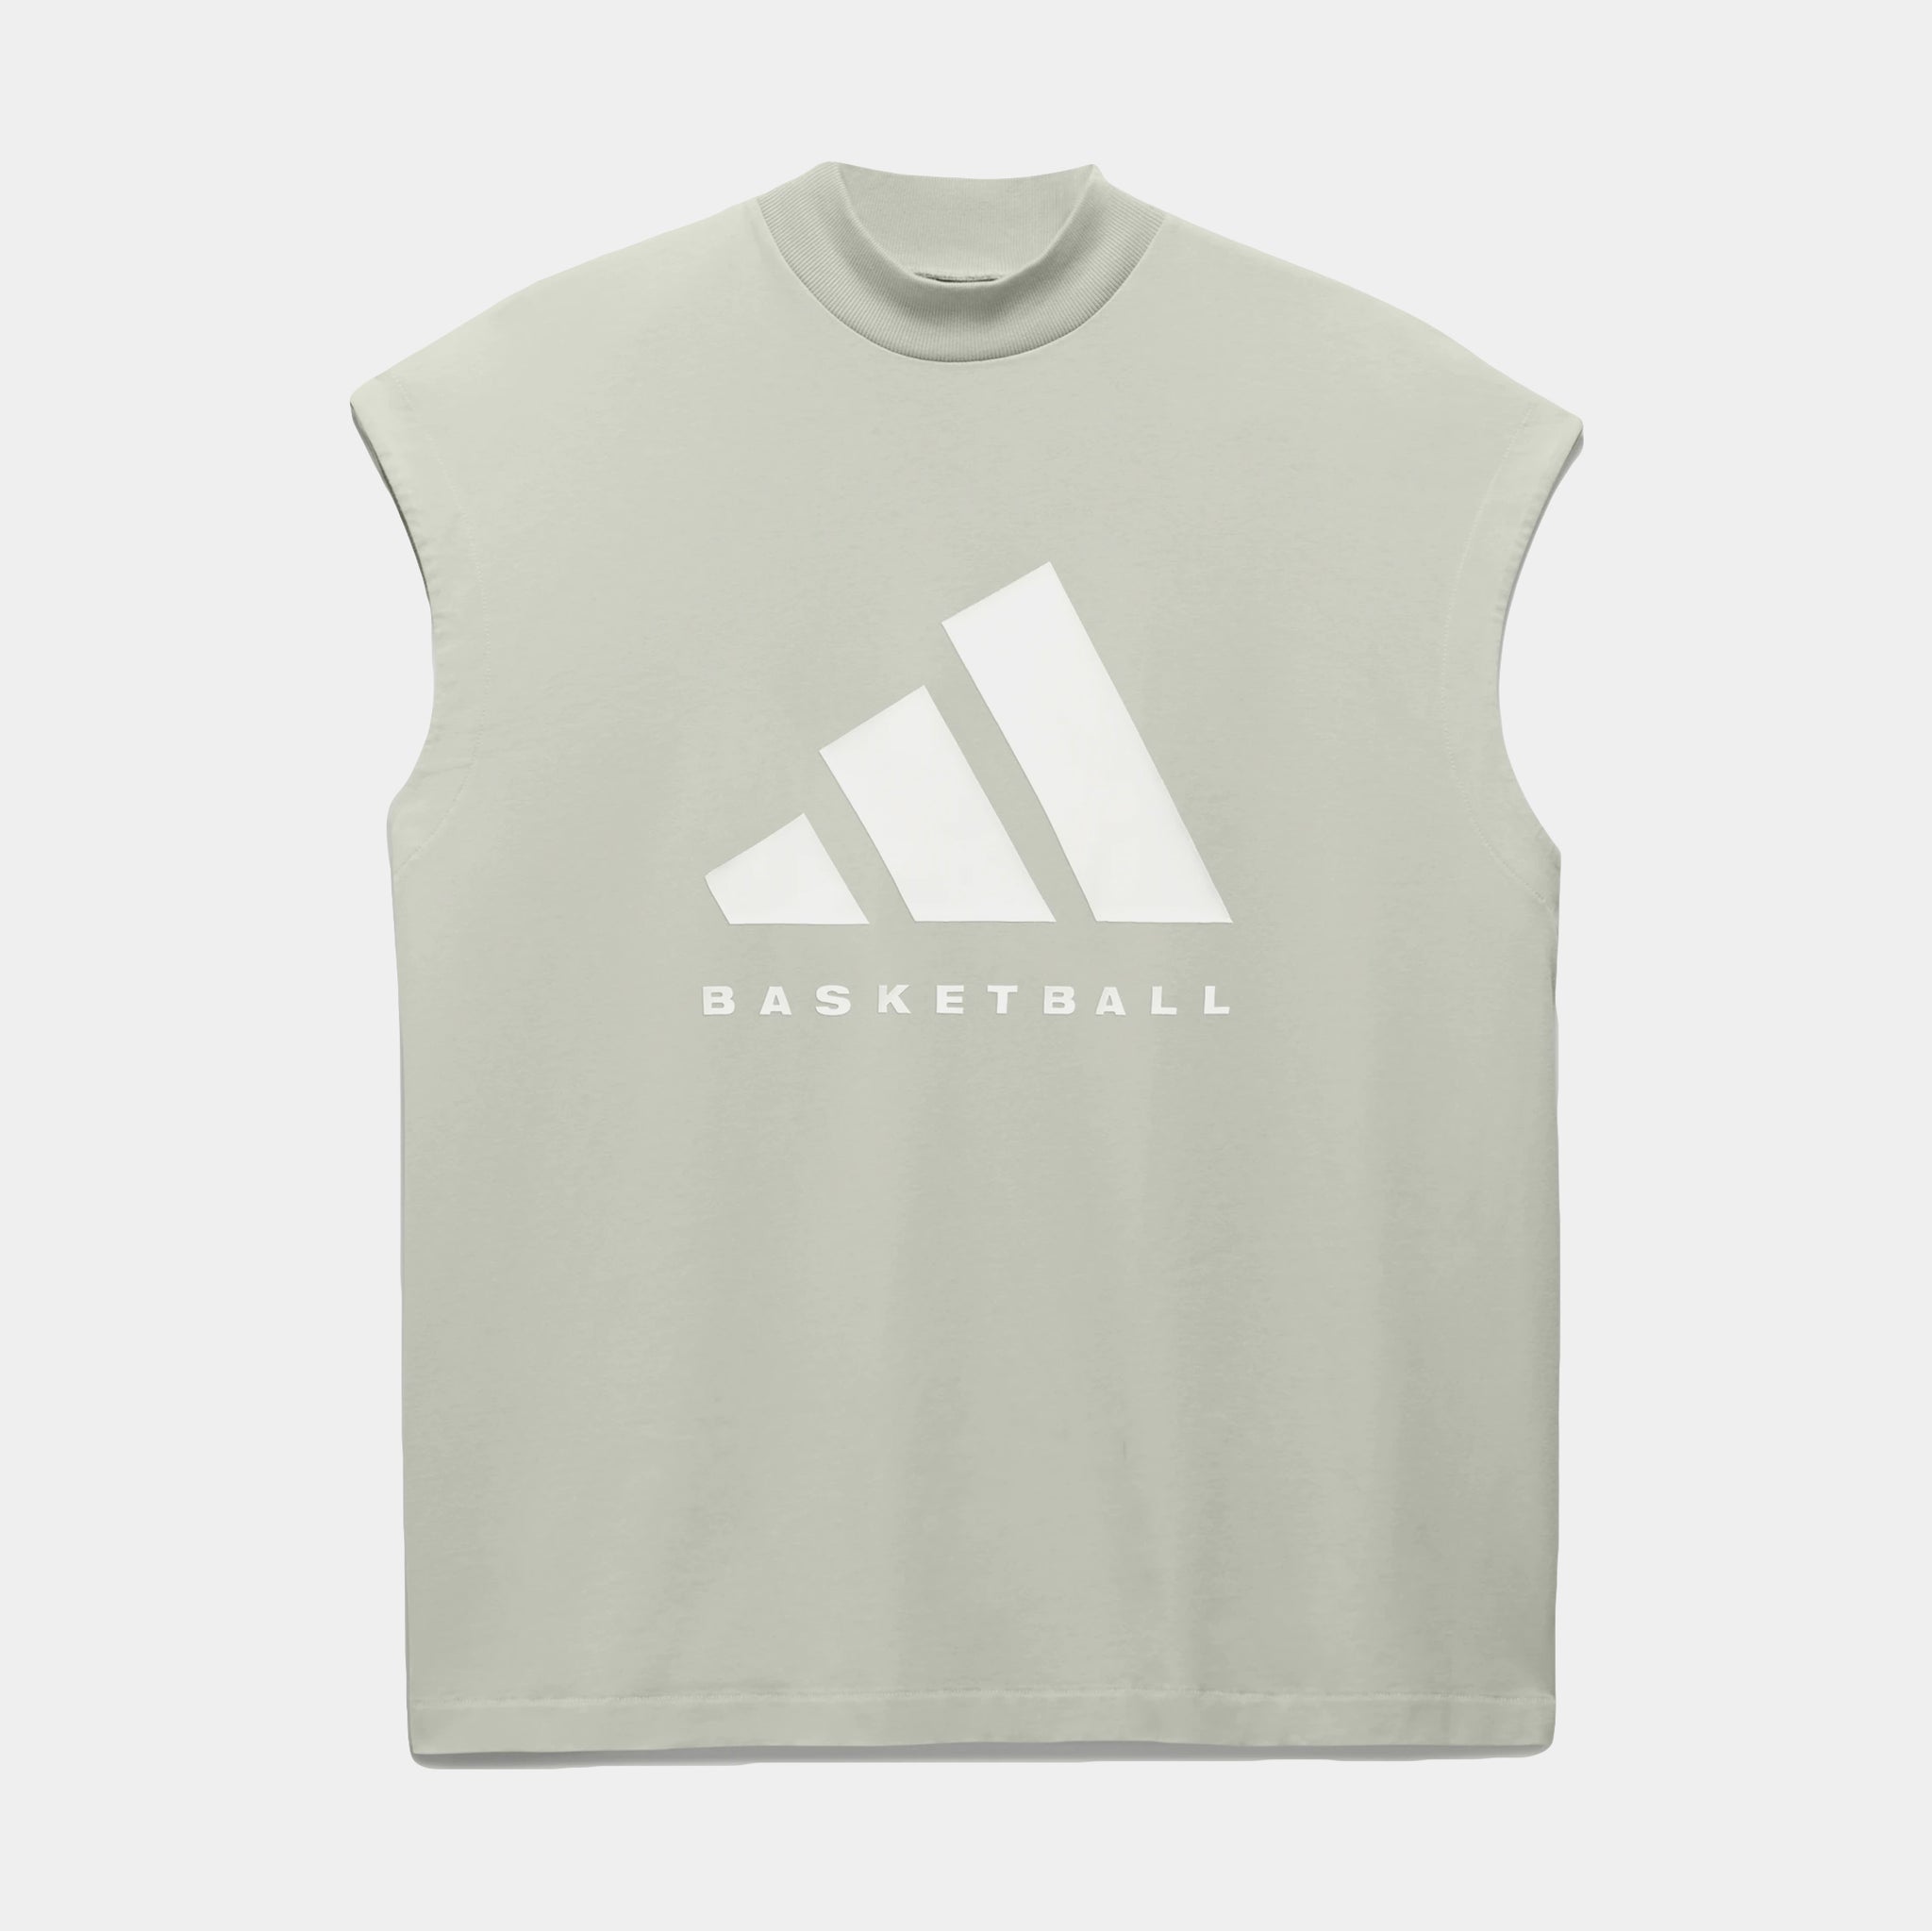 Mens Basketball Tank Tops & Sleeveless Shirts.